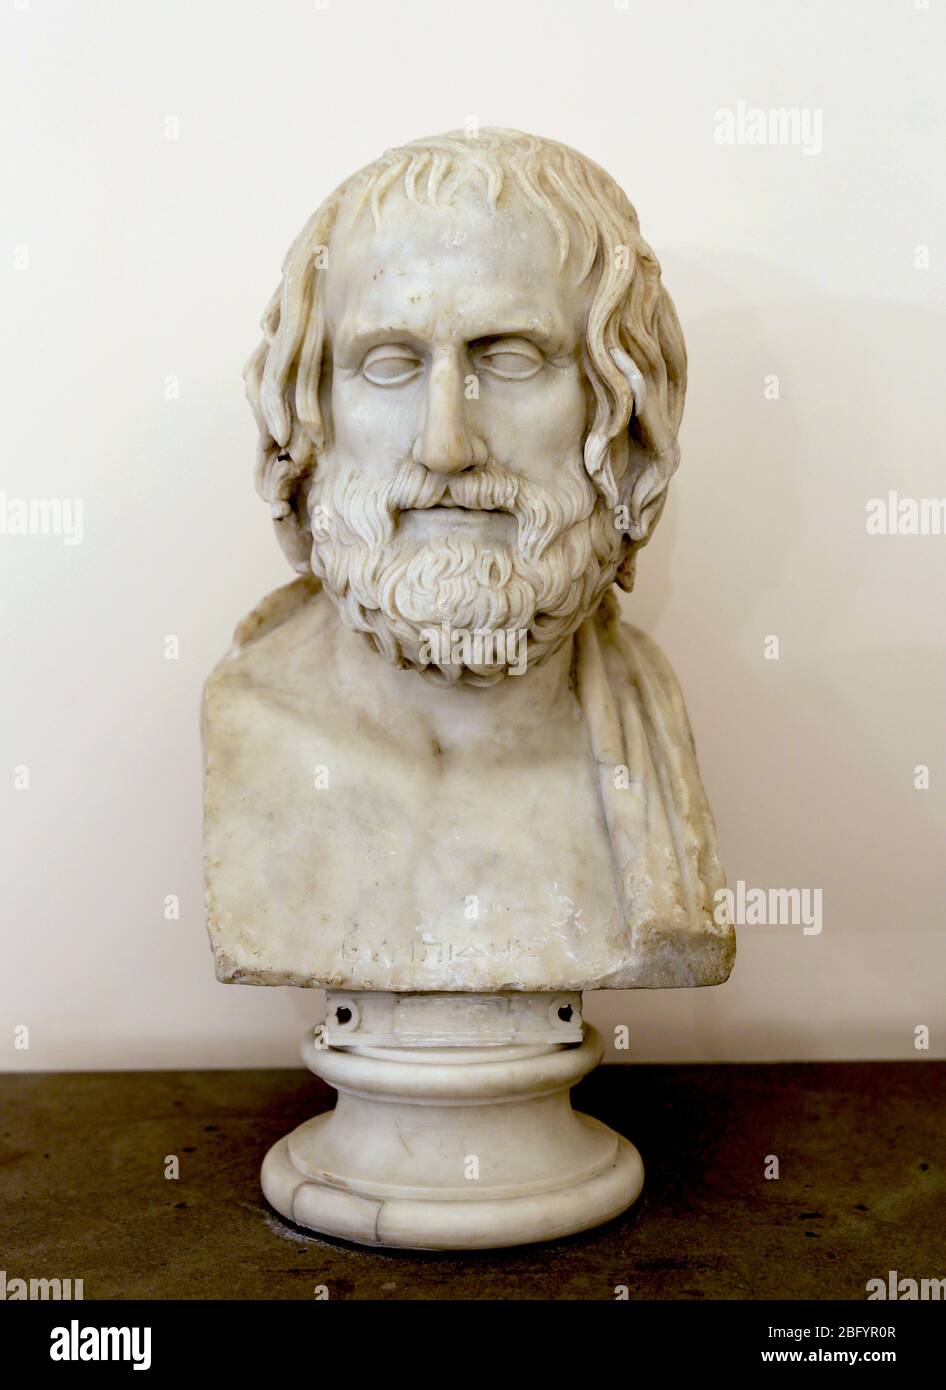 Euripidi (480 - 406 a.C.) Tragico poeta della Atene classica. Copia di Augusta (23 a.C.-14) di un originale greco del IV sec. a.C. Busto di marmo. Napoli. Foto Stock